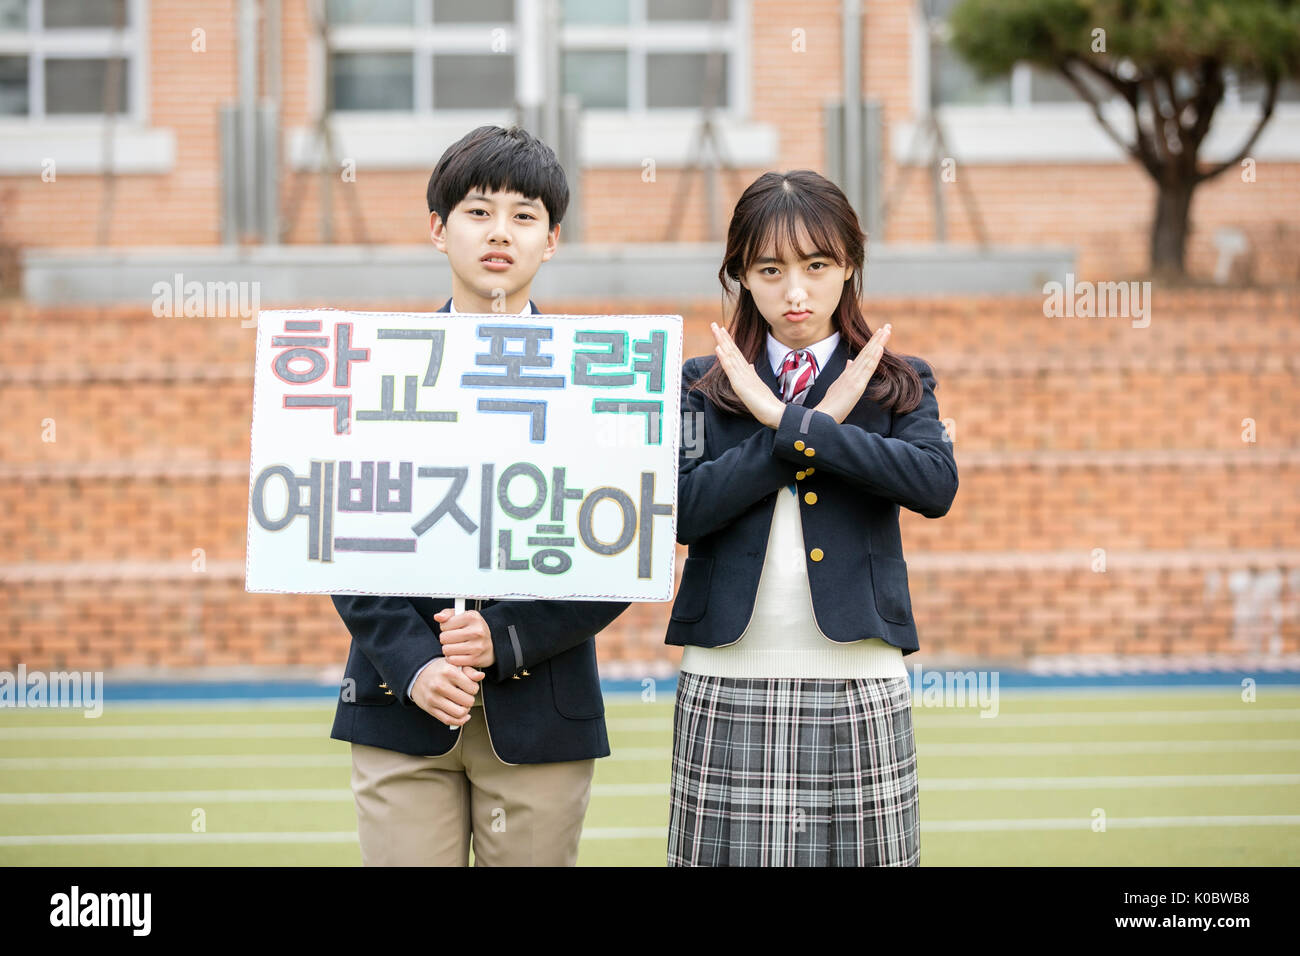 Deux étudiants de l'école montrant un message contre la violence à l'école coréenne Banque D'Images